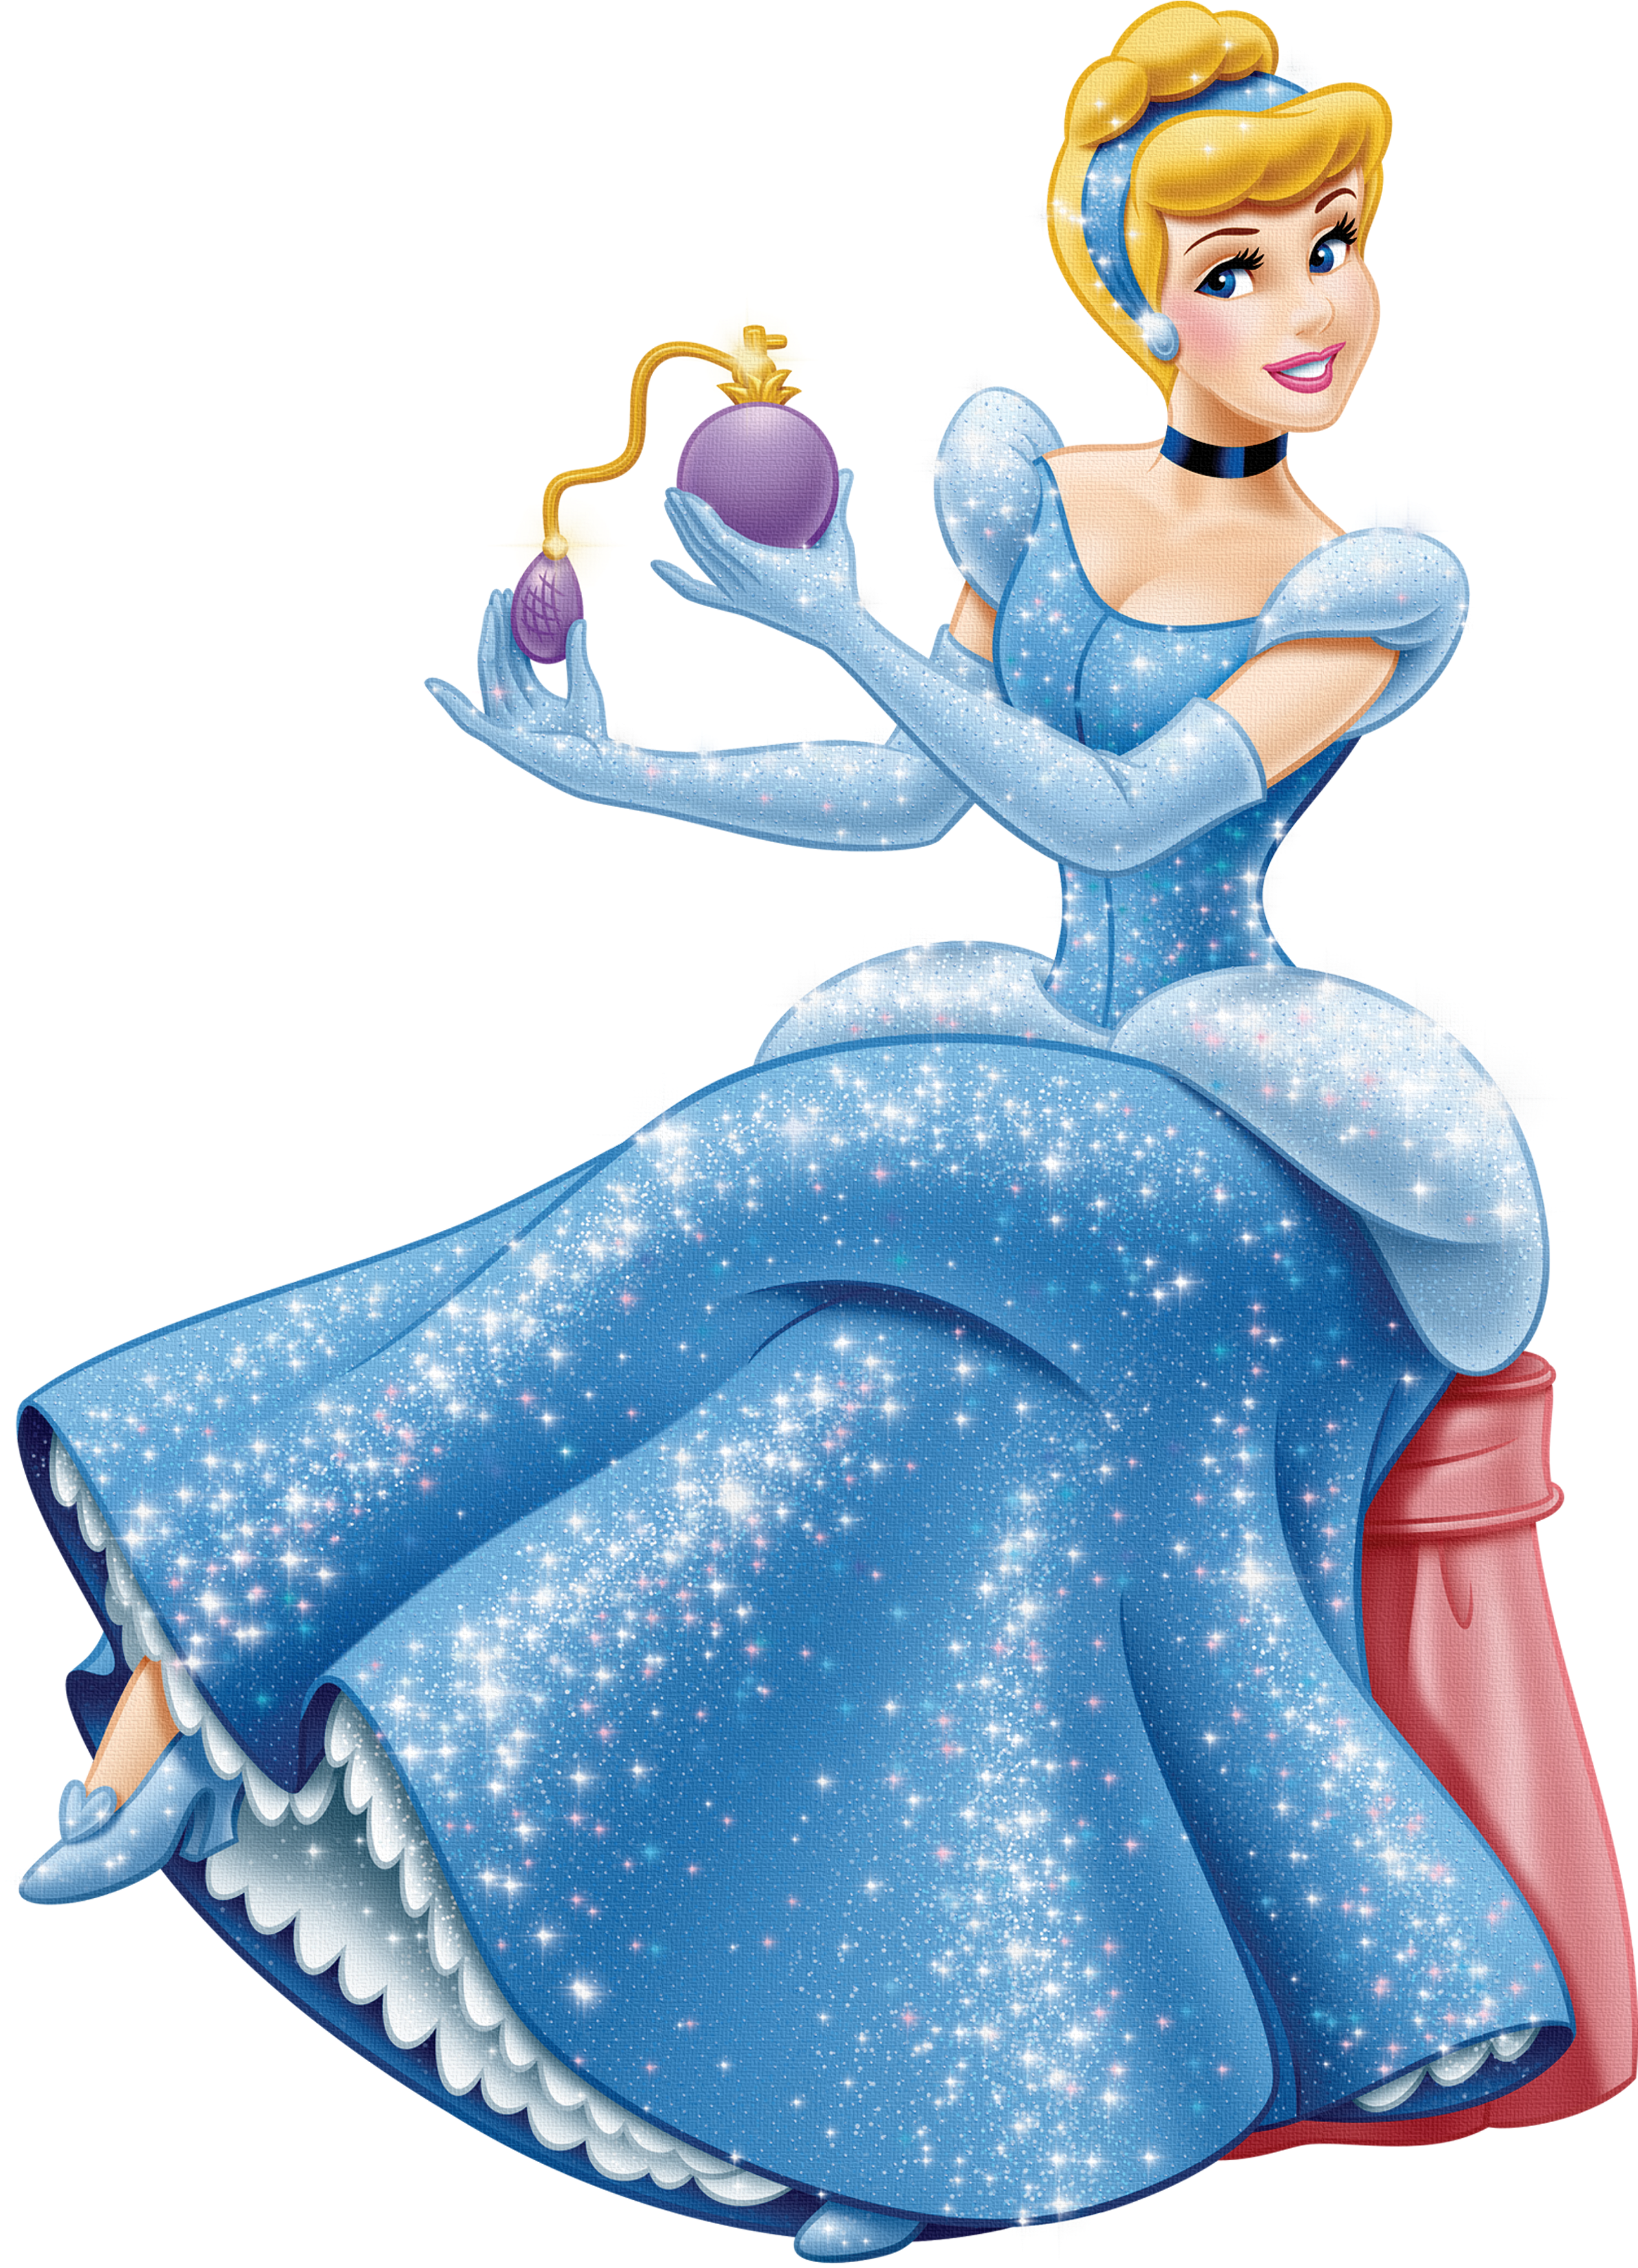 Merida Cinderella Princesas Disney Princess Clip Art Cinderella